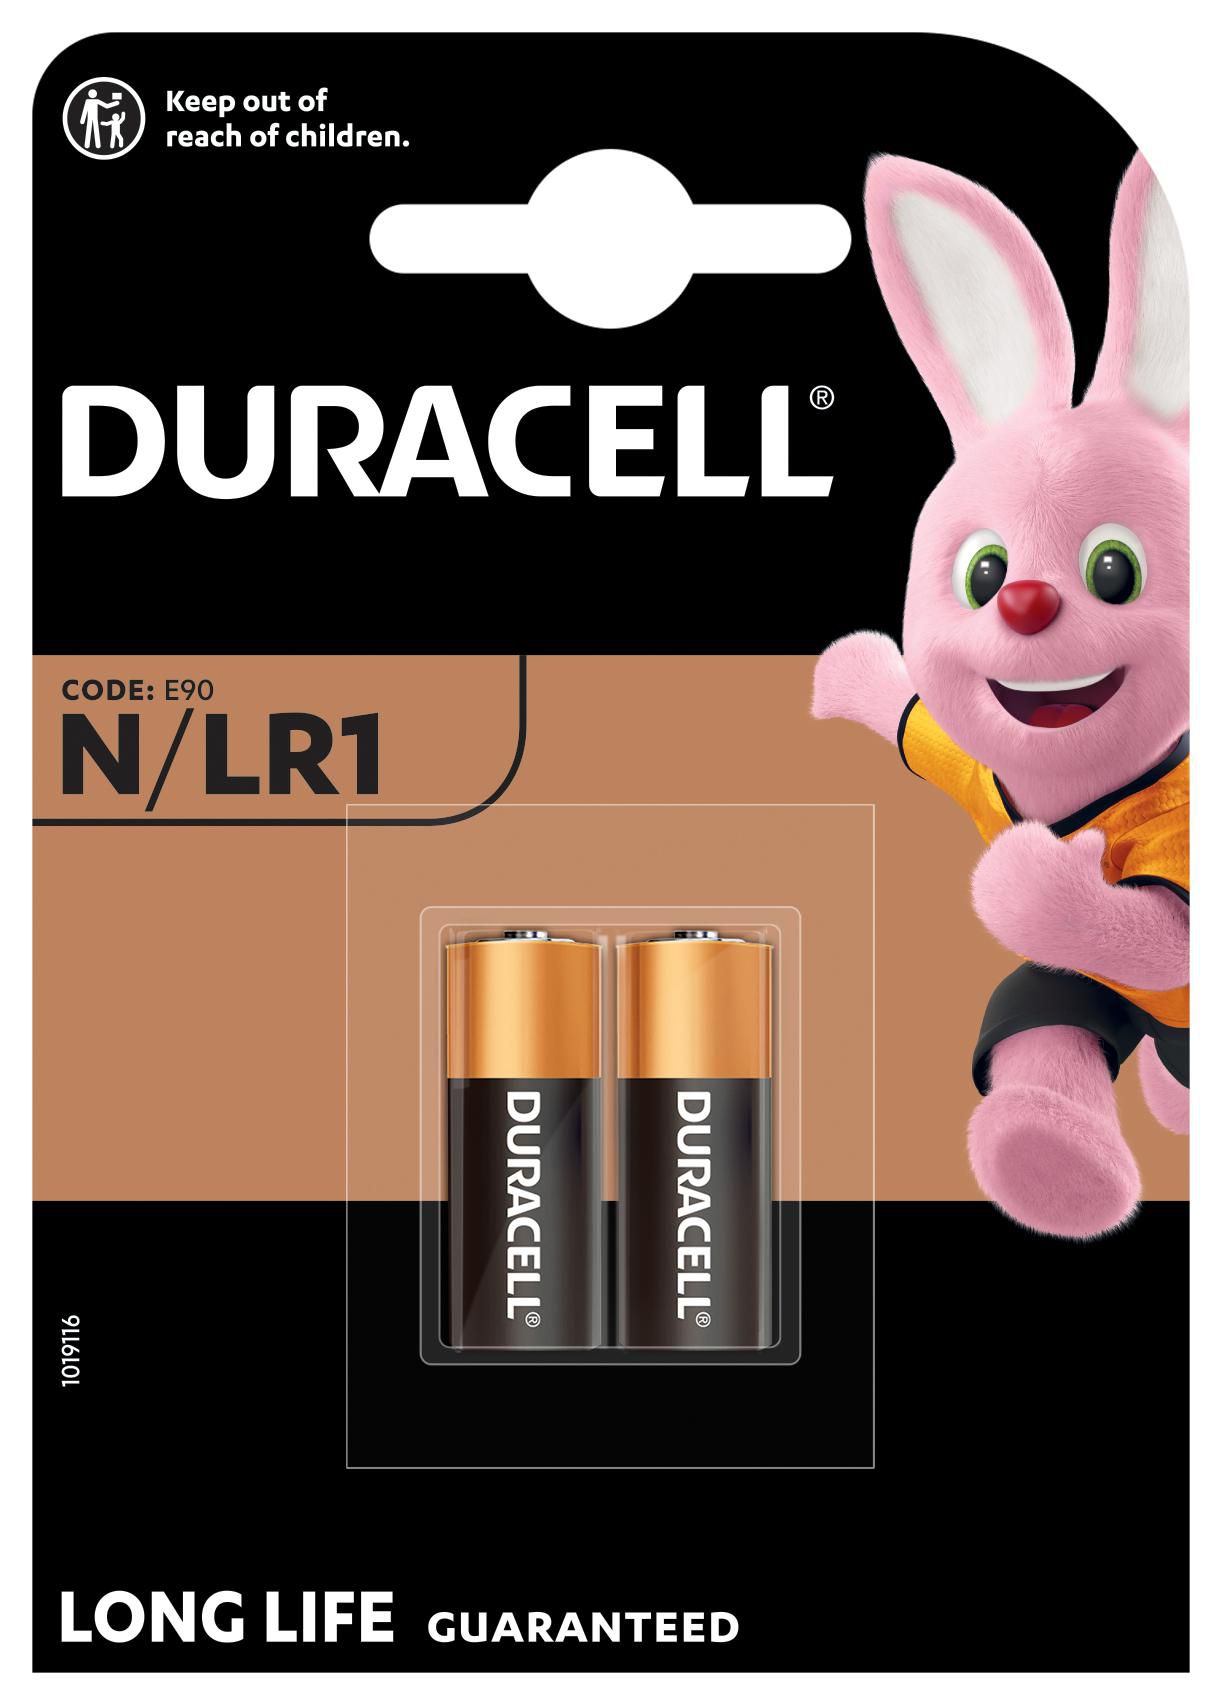 Duracell Batterie für Schließanlagen und Fernbedienungen, Lady (N), VE: 2 Stück